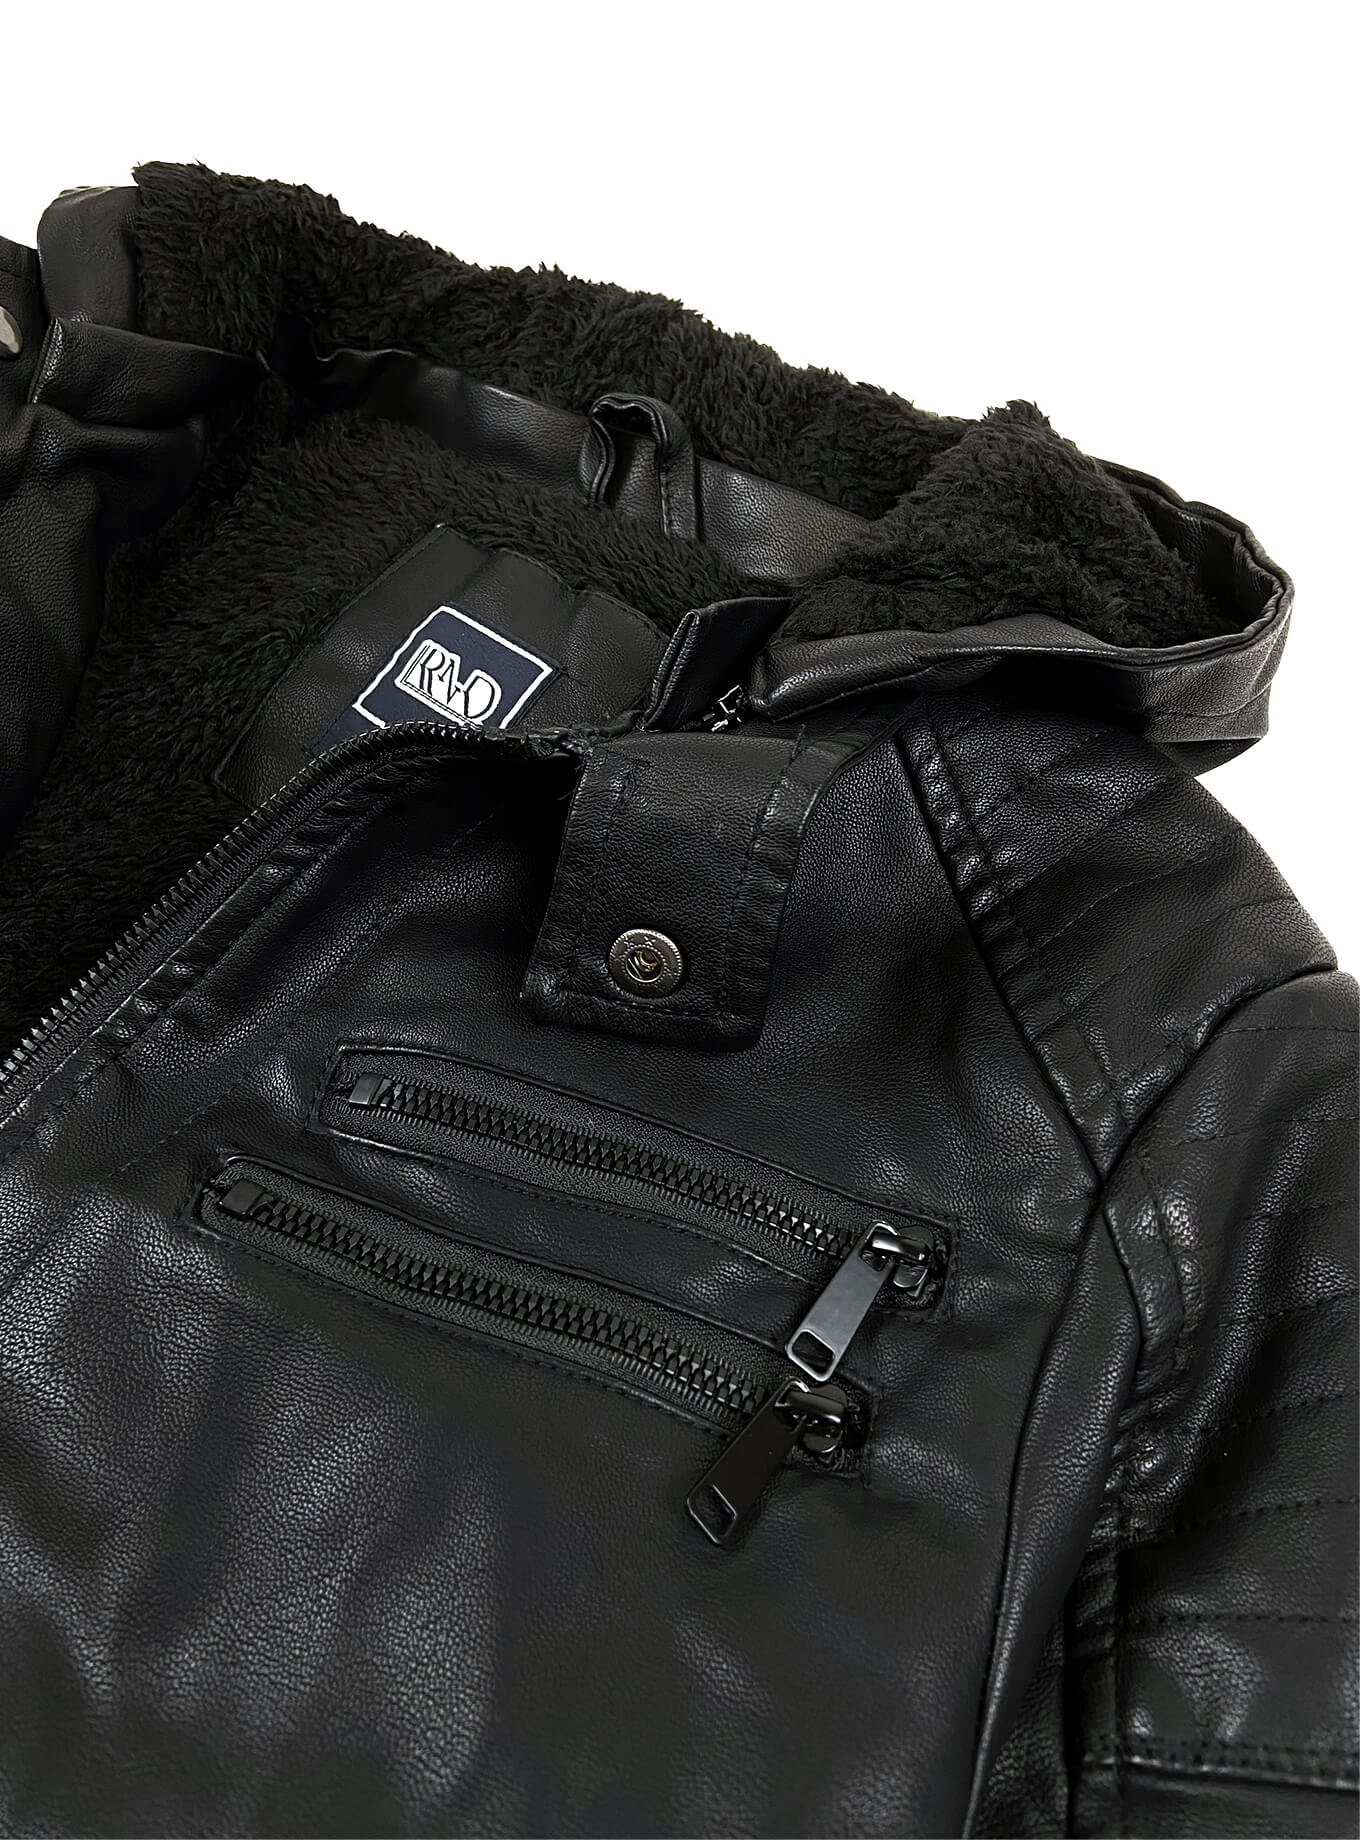 Standard Leather Jacket Bad Boy Wholesale Boys Faux Jacket Leather ...